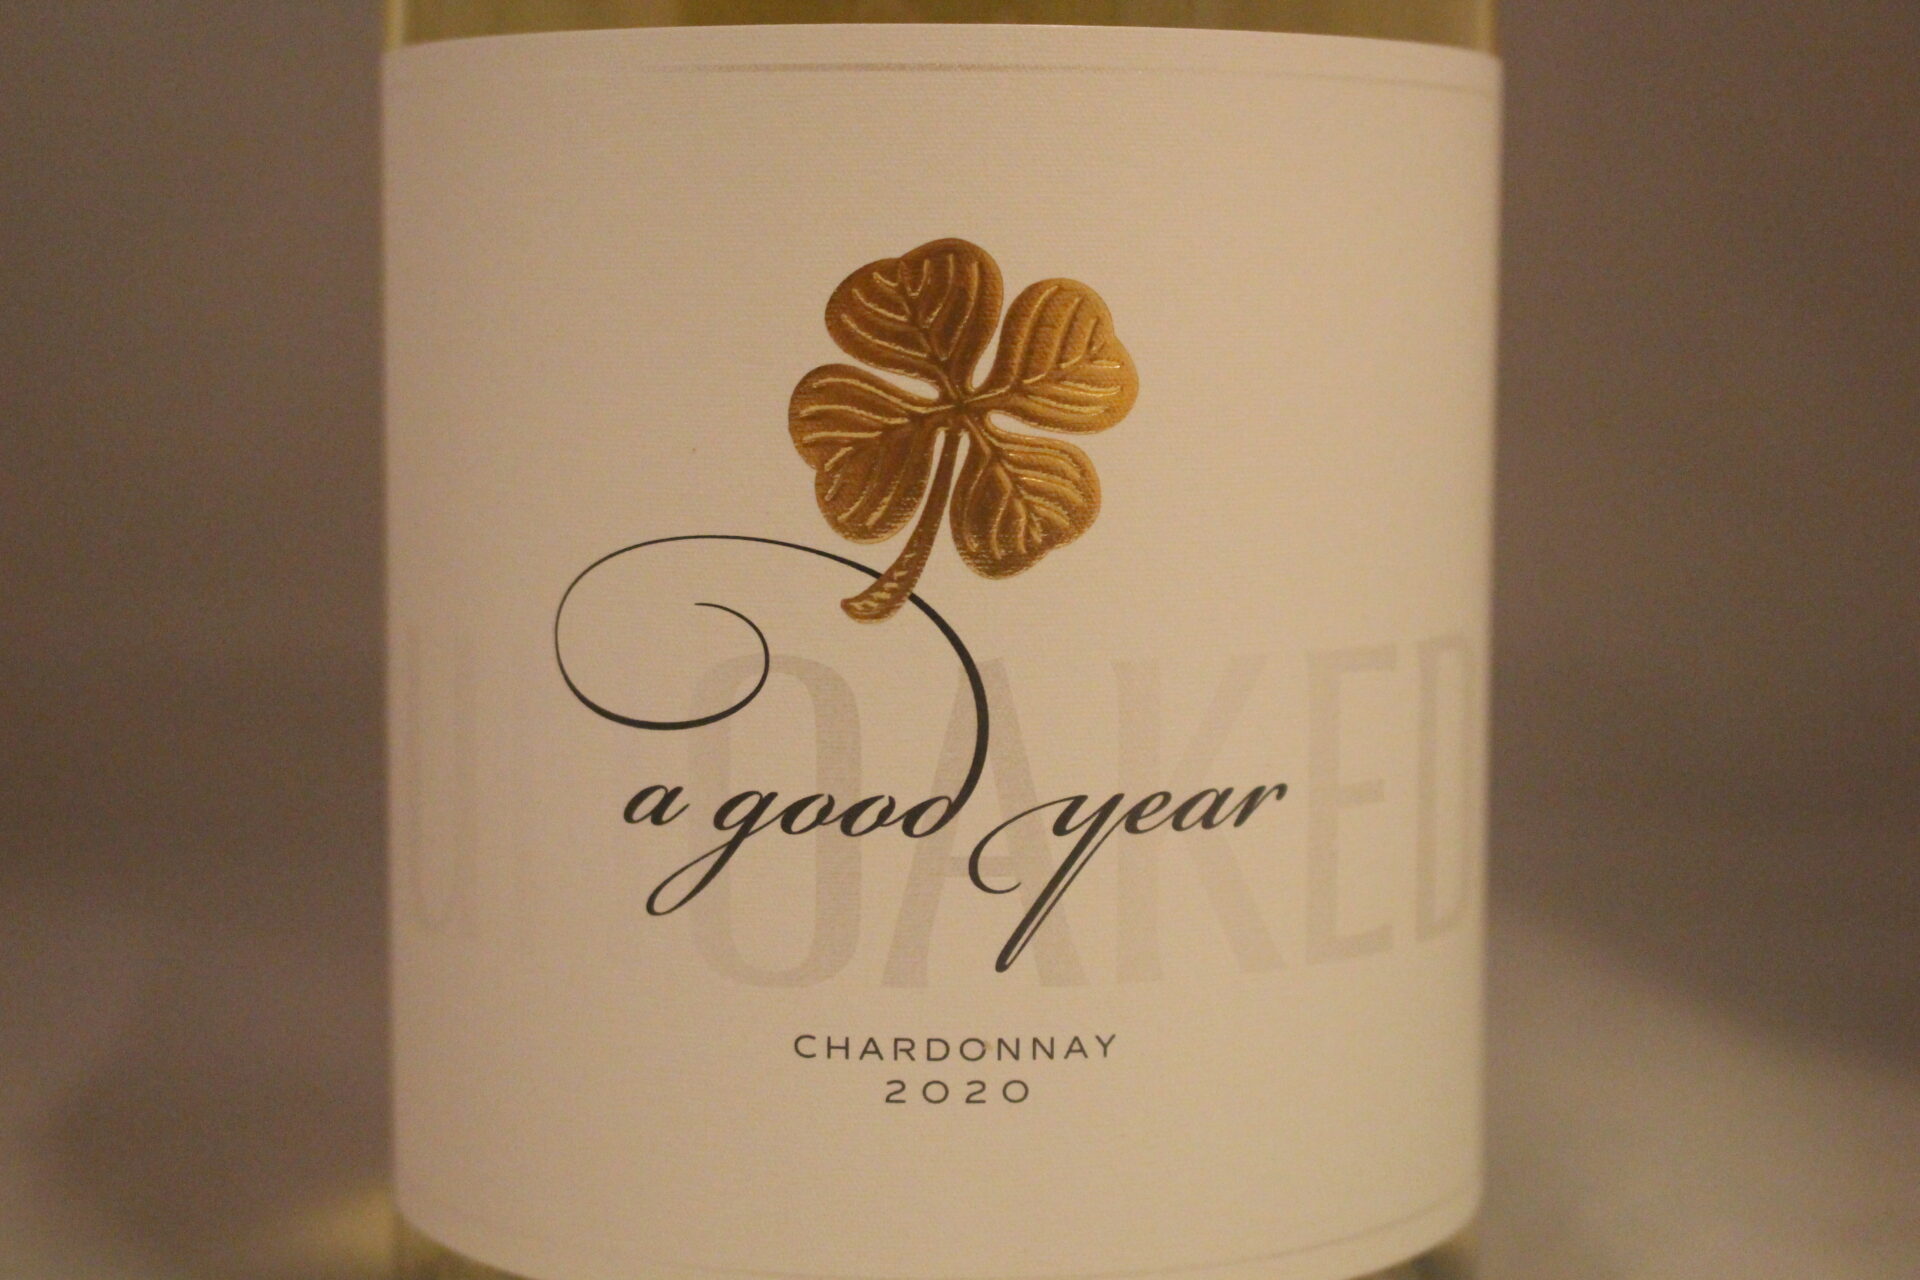 Champagne-wijnen de blender A Good Year Chardonnay